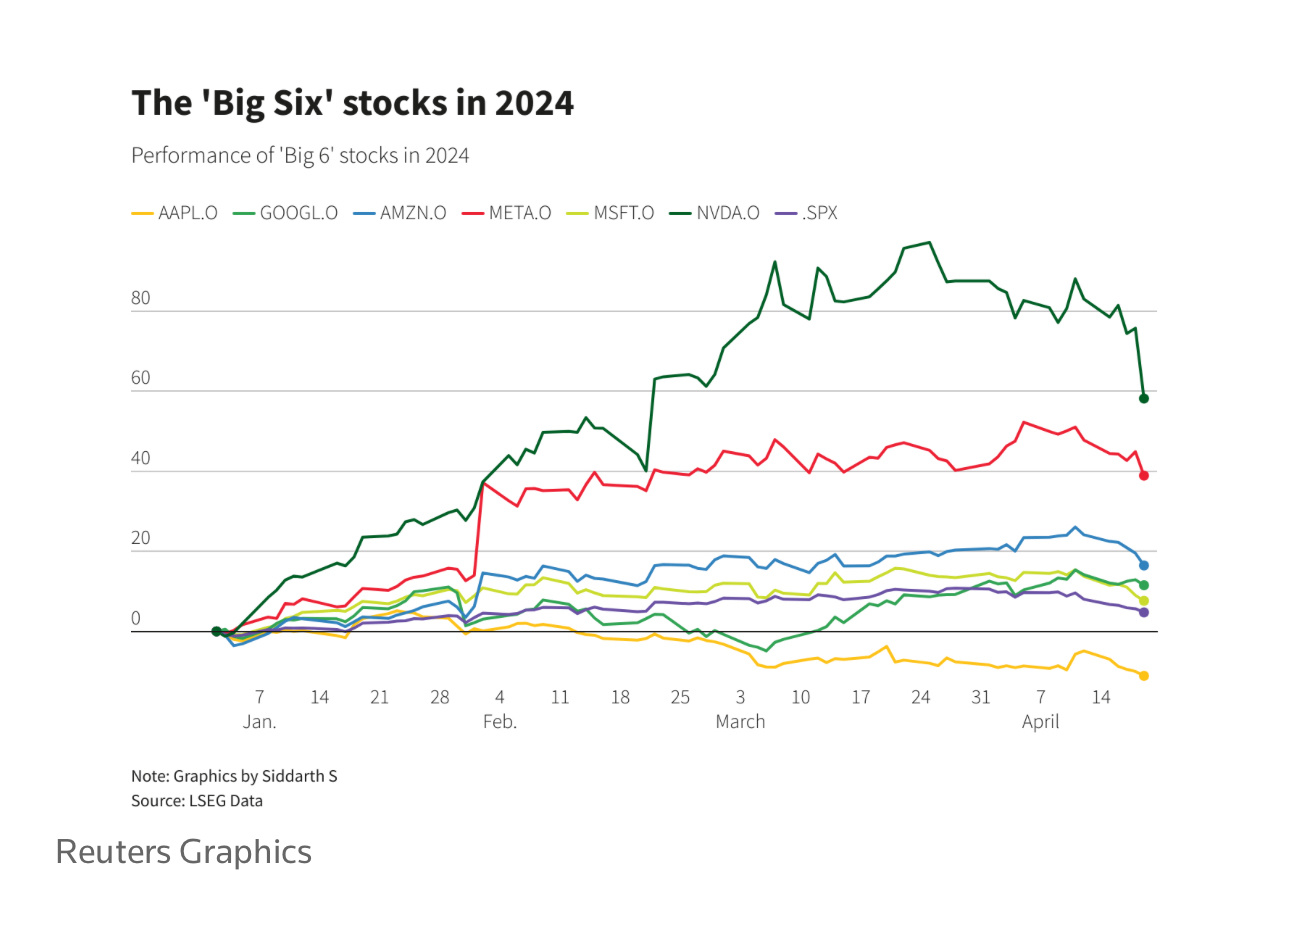 [リンク: reuters.com/mar...] UBSグローバルリサーチ戦略家は、ビッグシックステクノロジーストックの利益成長勢いが、今後数四半期で「崩壊」する可能性があると述べ、メガキャップ企業の格付けを下げました。